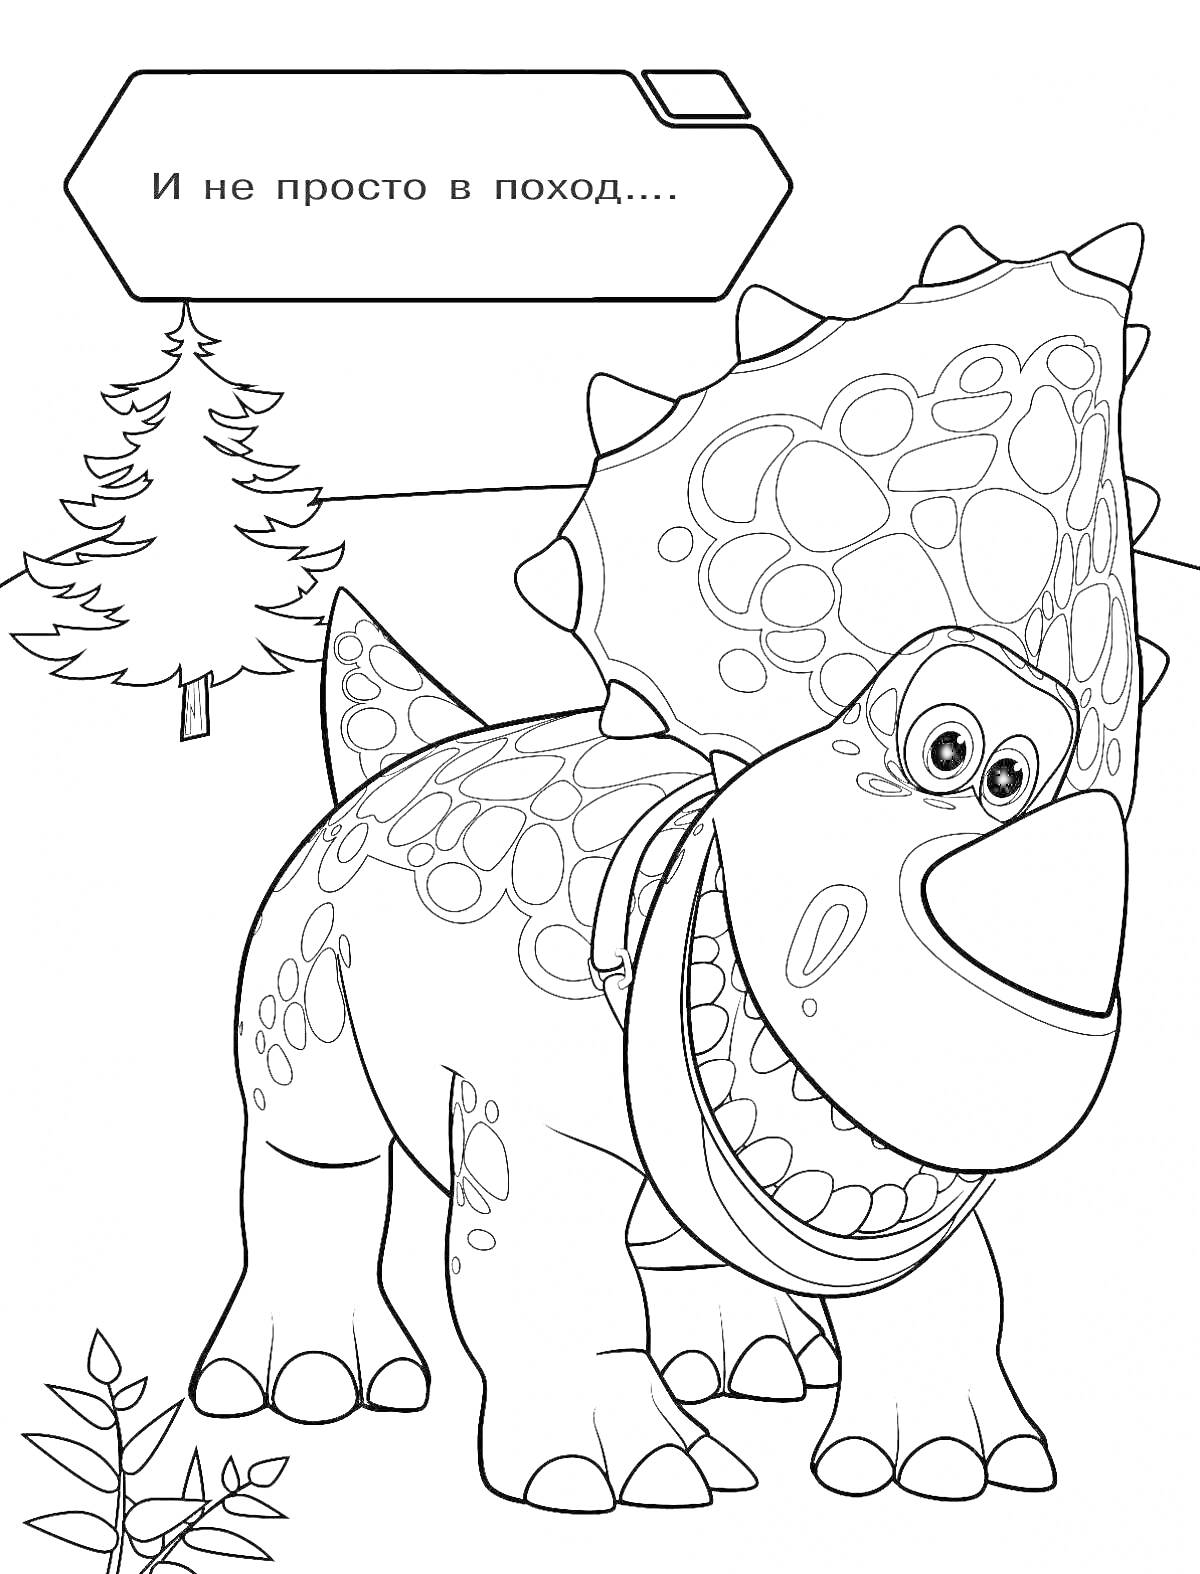 Турбозавр с хвостом и большими глазами, дерево, трава, надпись 